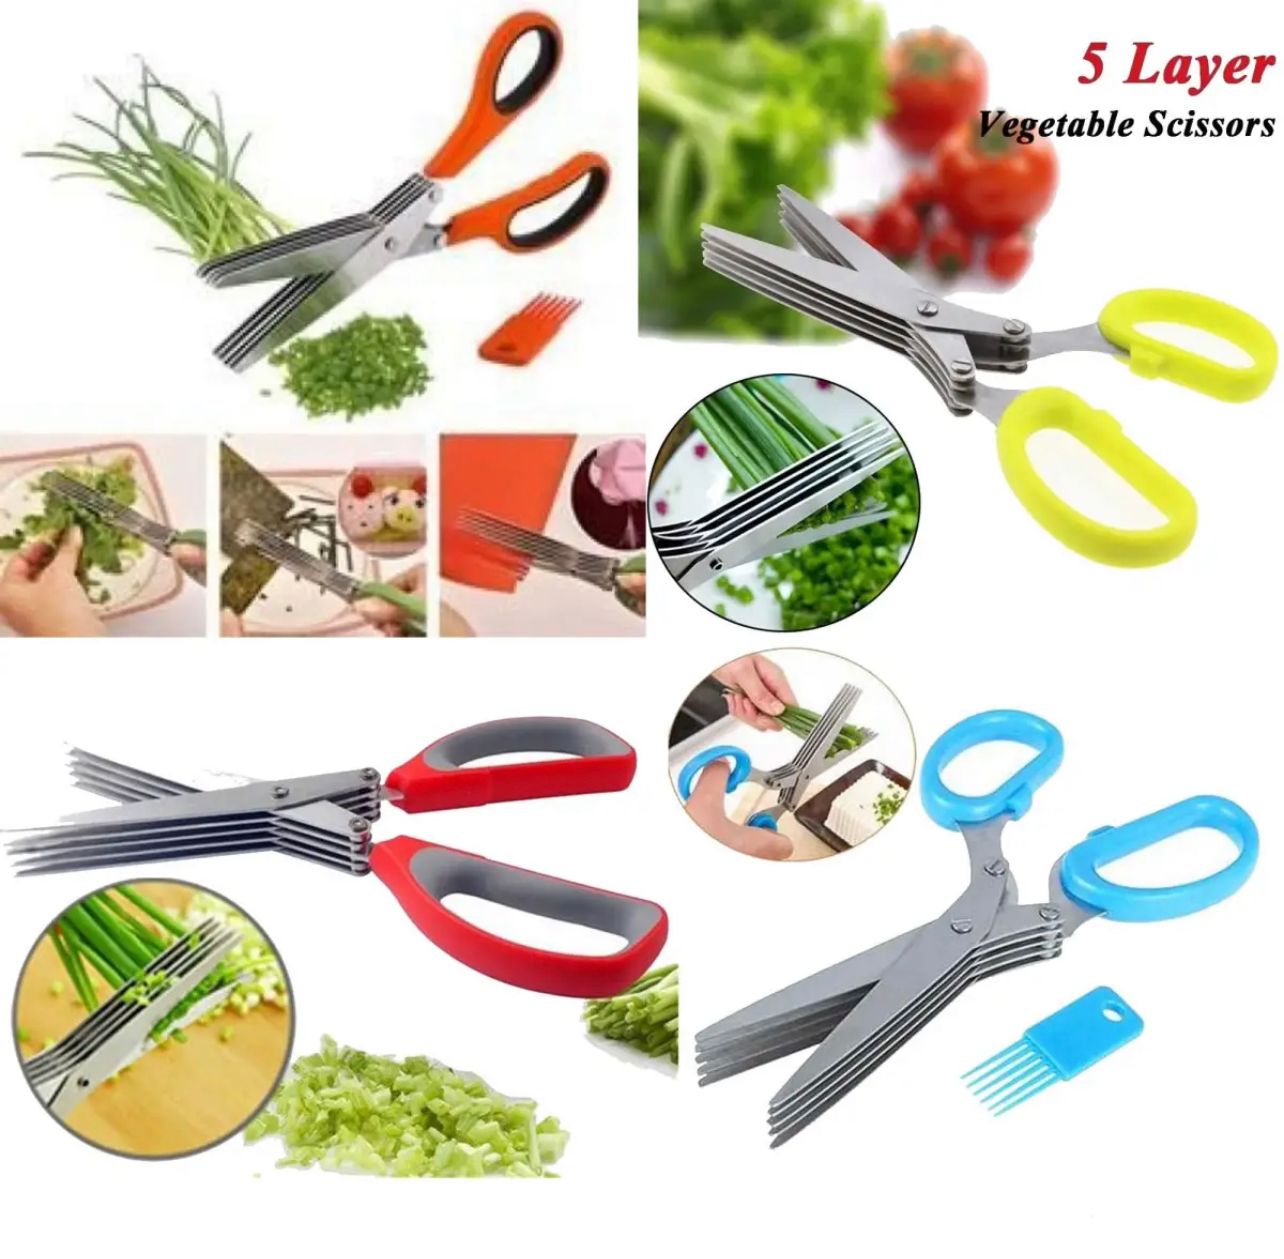 5 Layer Vegetable Scissor 320 AurDekhao.pk